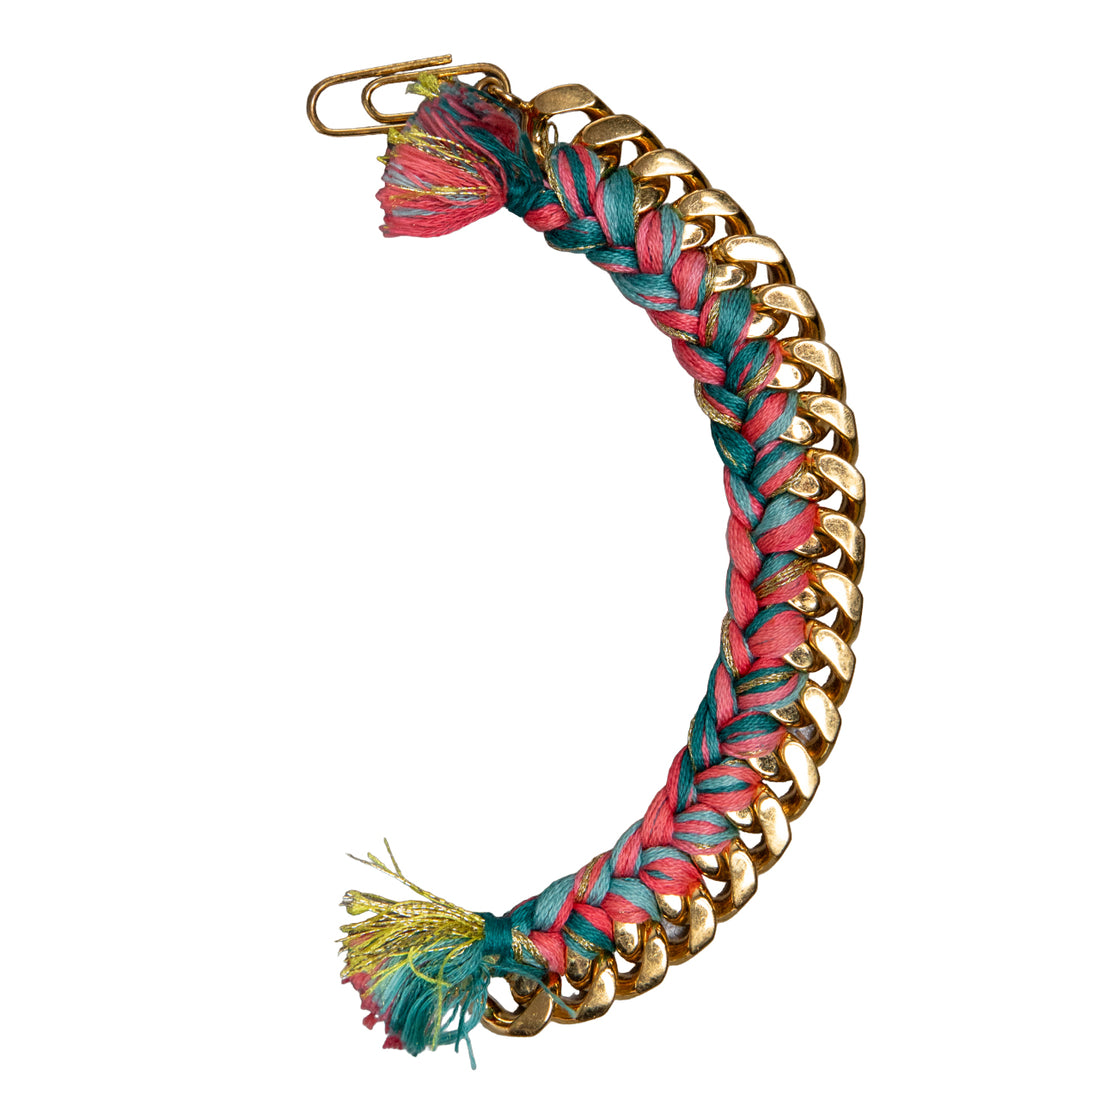 Aurelie Bidermann Colorful Do Brasil bracelet